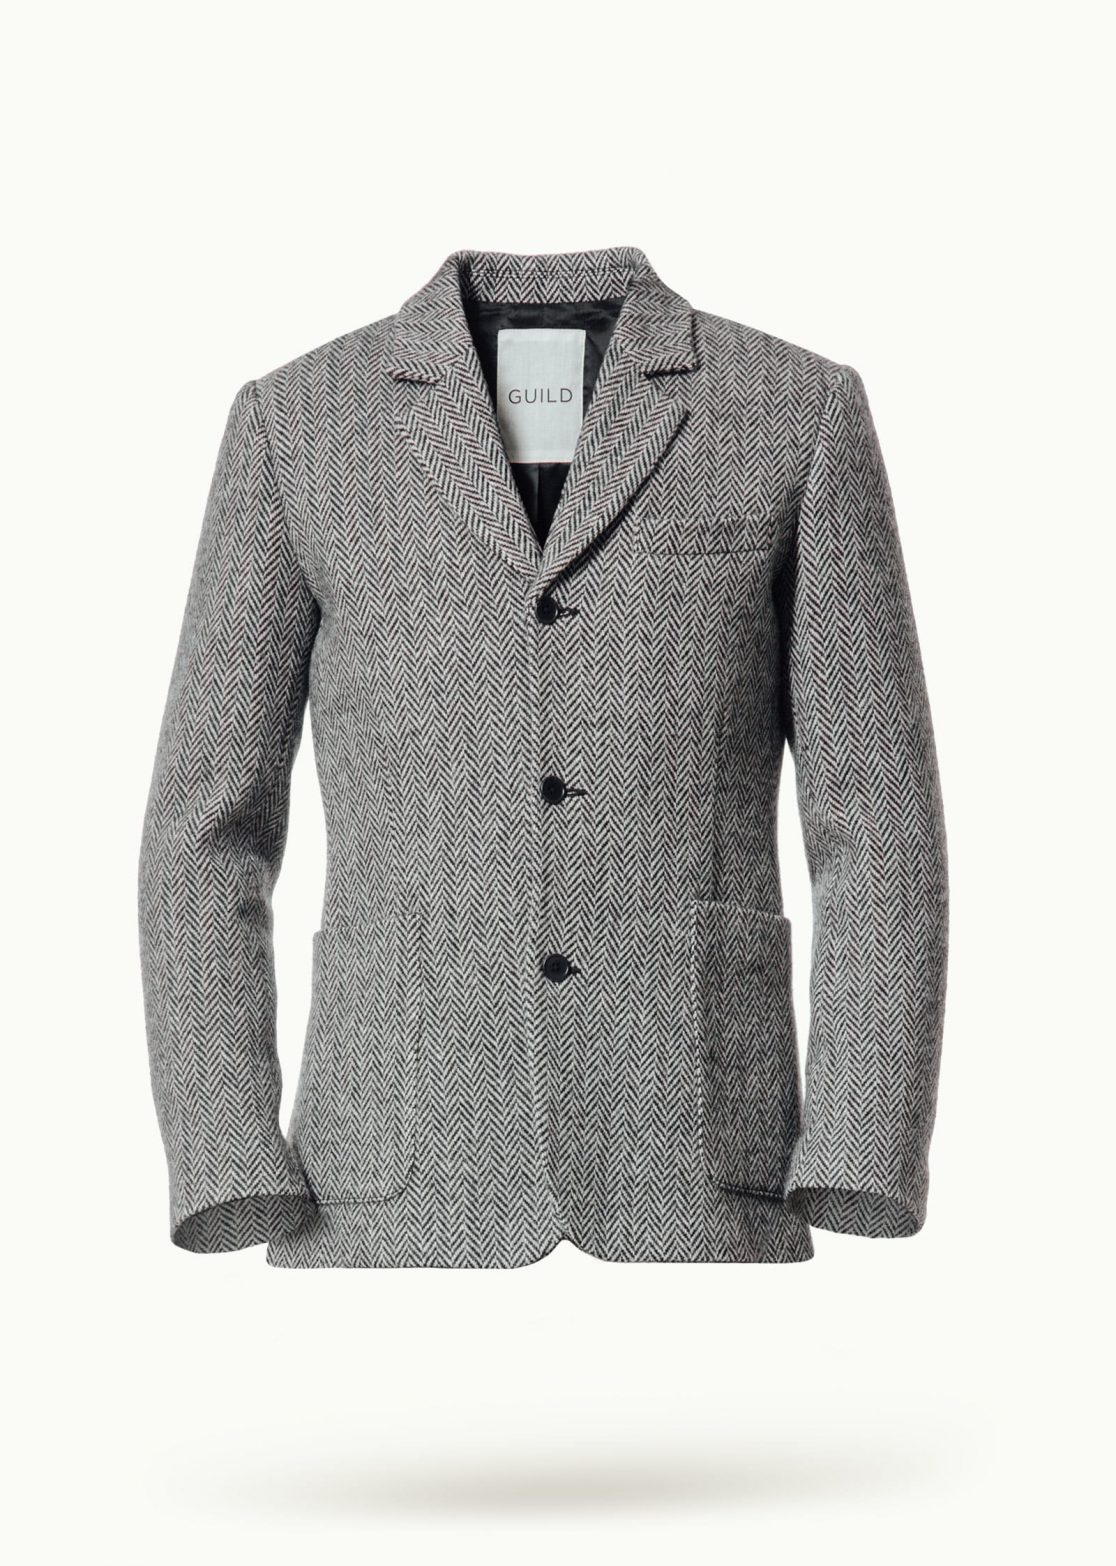 Men - Suit Jackets - Willidow Suit B/W Herringbone Image Primary